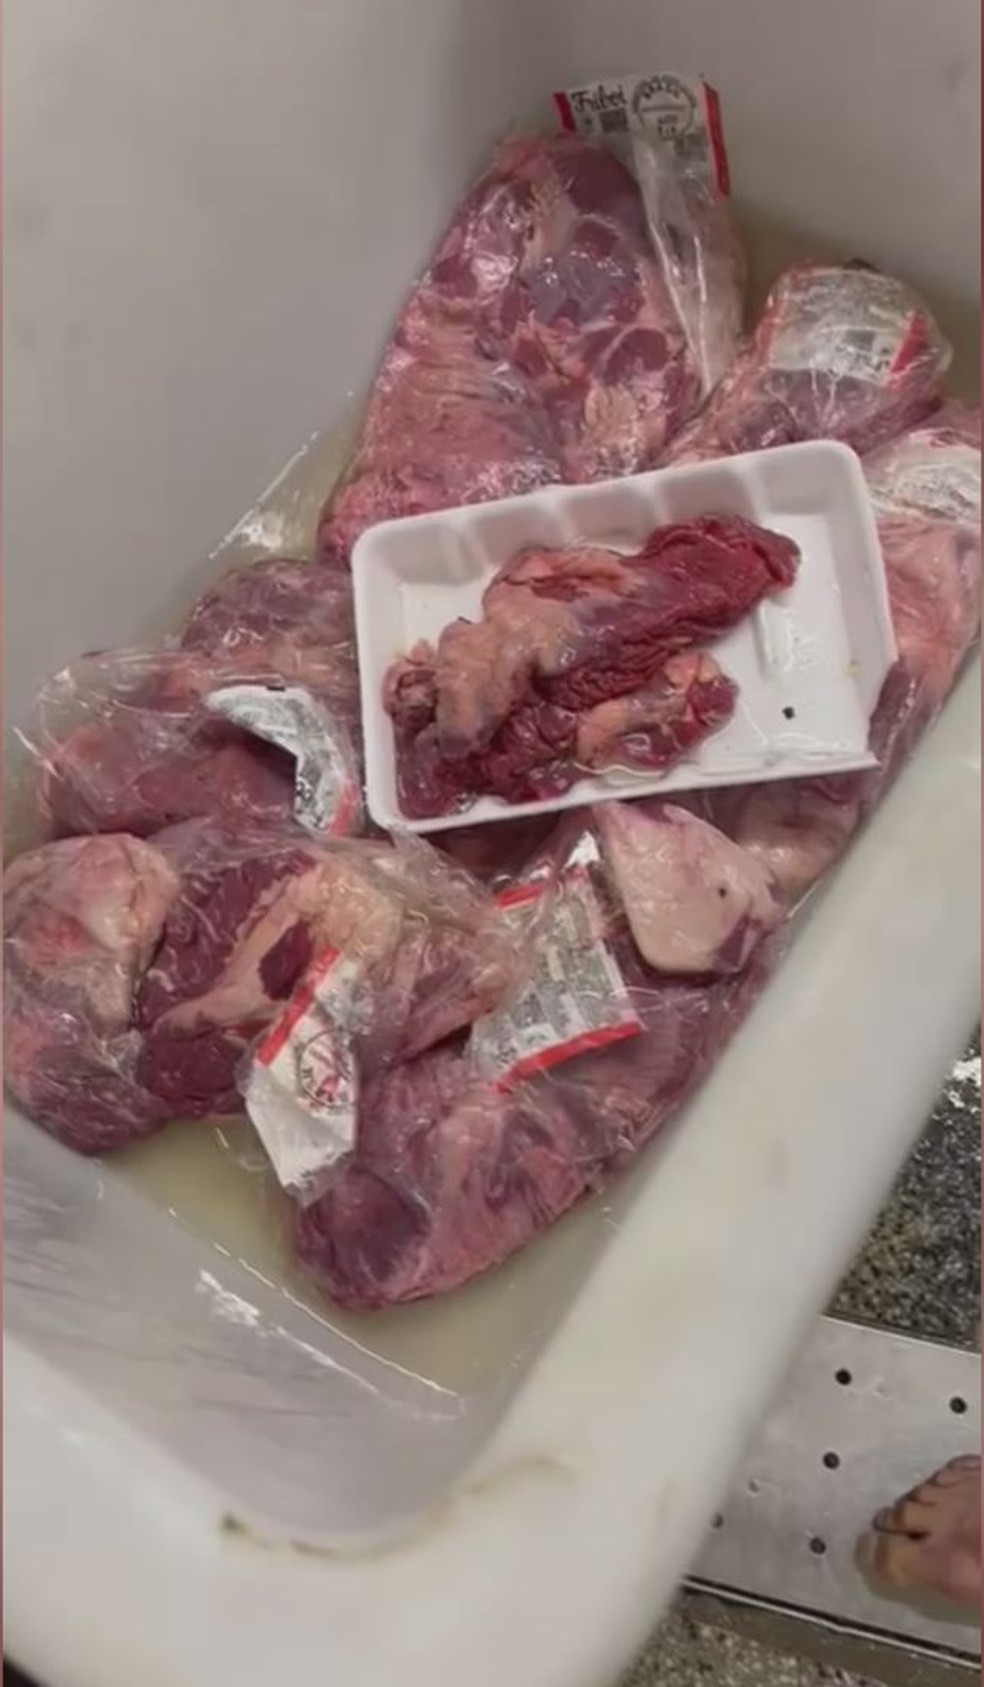 Carnes foram colocadas em cloro a pedido de cliente após encontrar larvas em uma peça compra em mercado no Centro de Itanhaém — Foto: Kelly Beck Tofteraa/Arquivo Pessoal